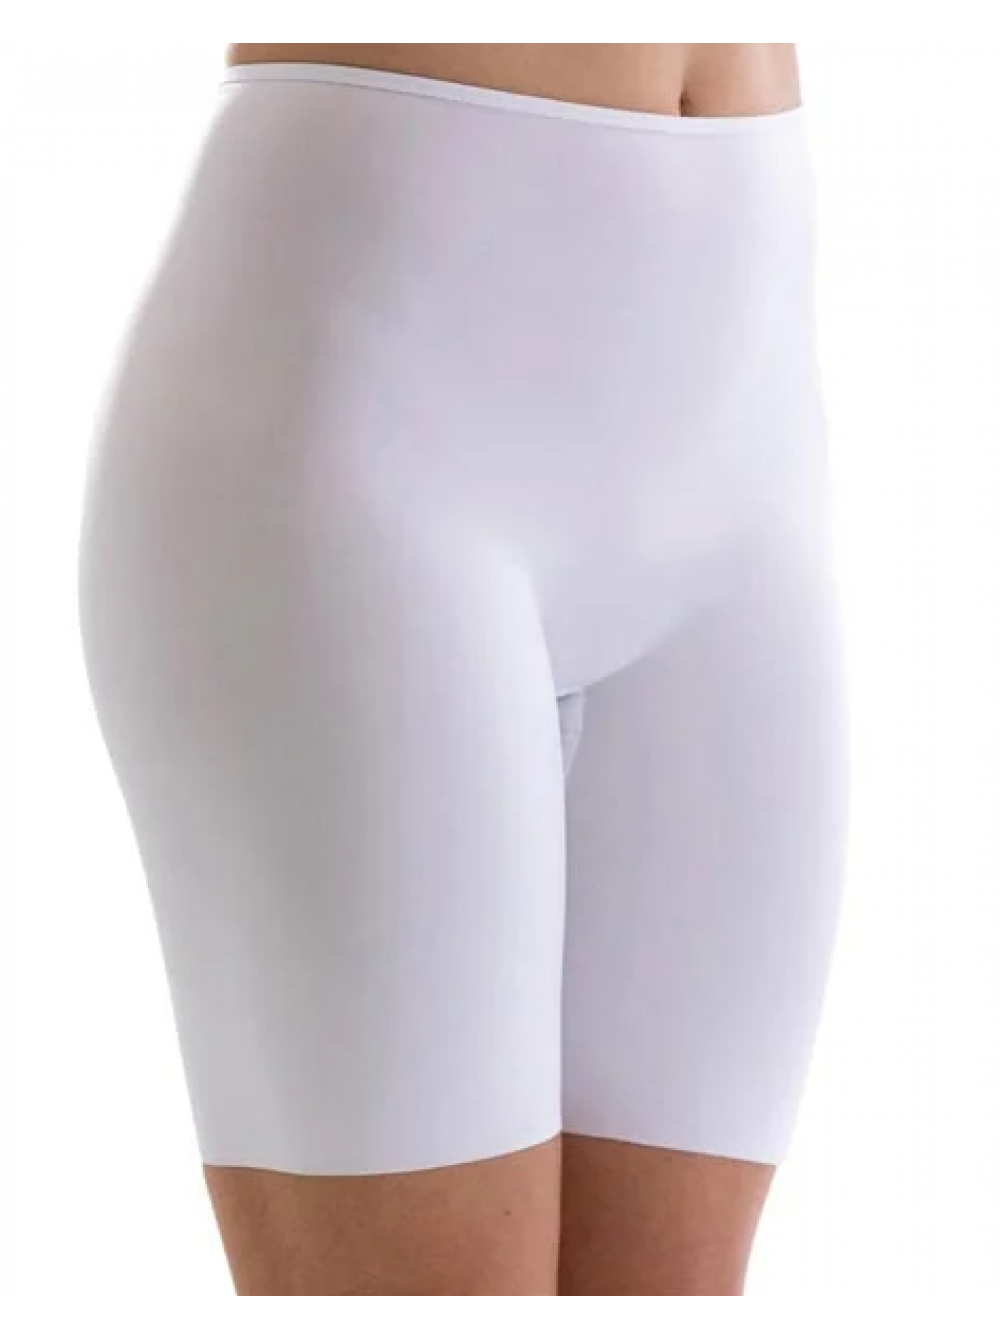 Женские длинные трусы шорты Womens long shorts размер от L до XXXL из  Финляндии купить в СПб и Москве. ✓Большой выбор ✓Выгодные цены ✓Бесплатная  доставка.